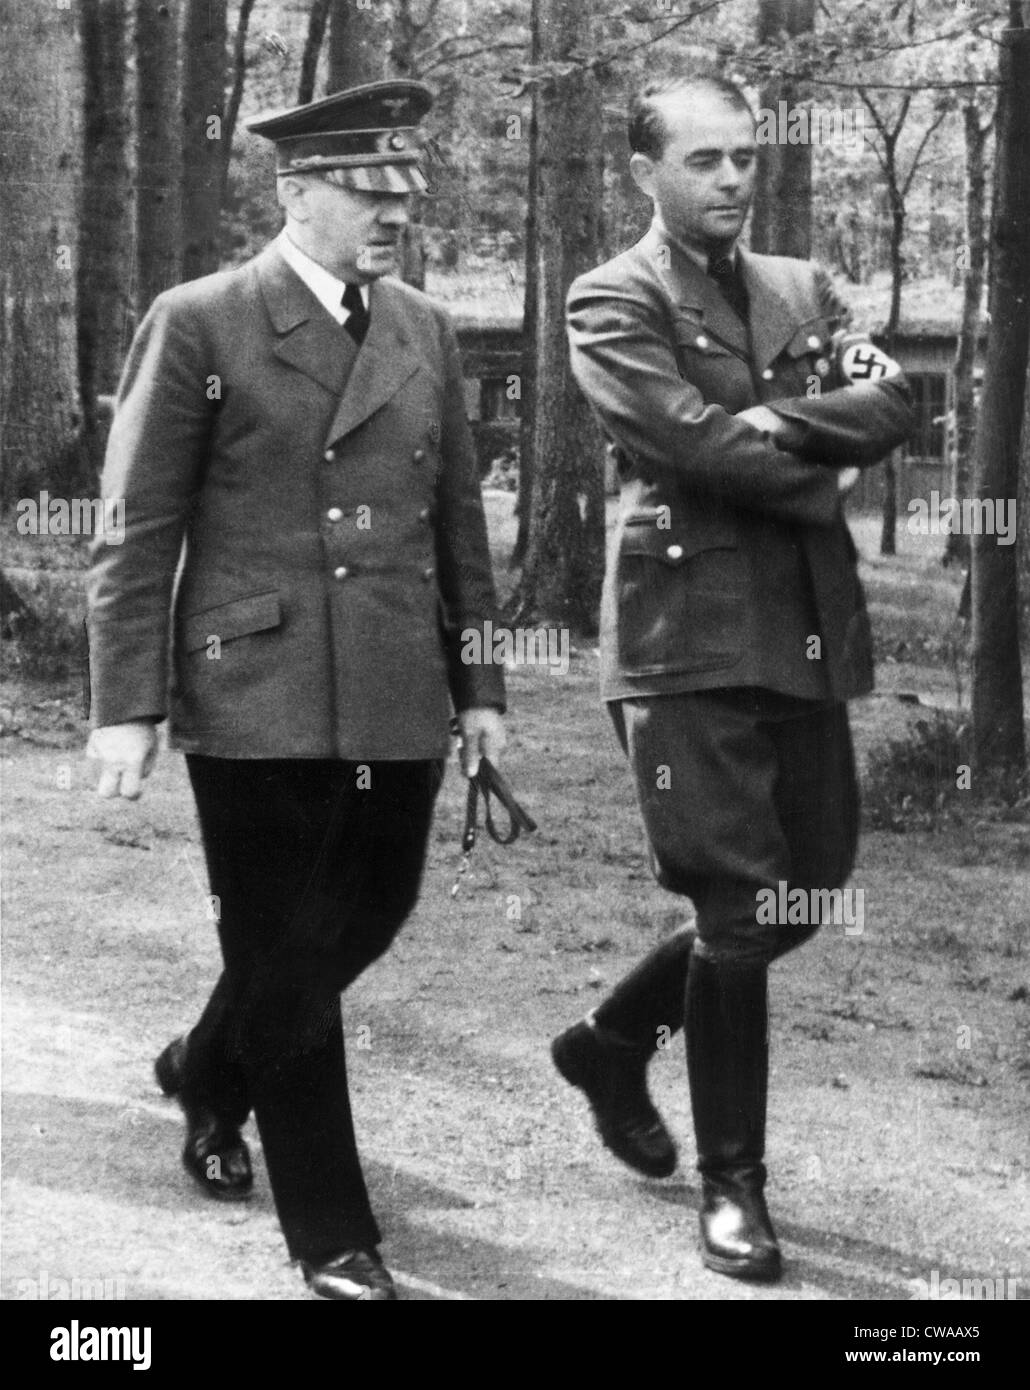 ADOLF HITLER (L), und ALBERT SPEER (R), an Wolfschanze, Ostpreußen, 1940er Jahre. Everett/CSU Archive. Stockfoto